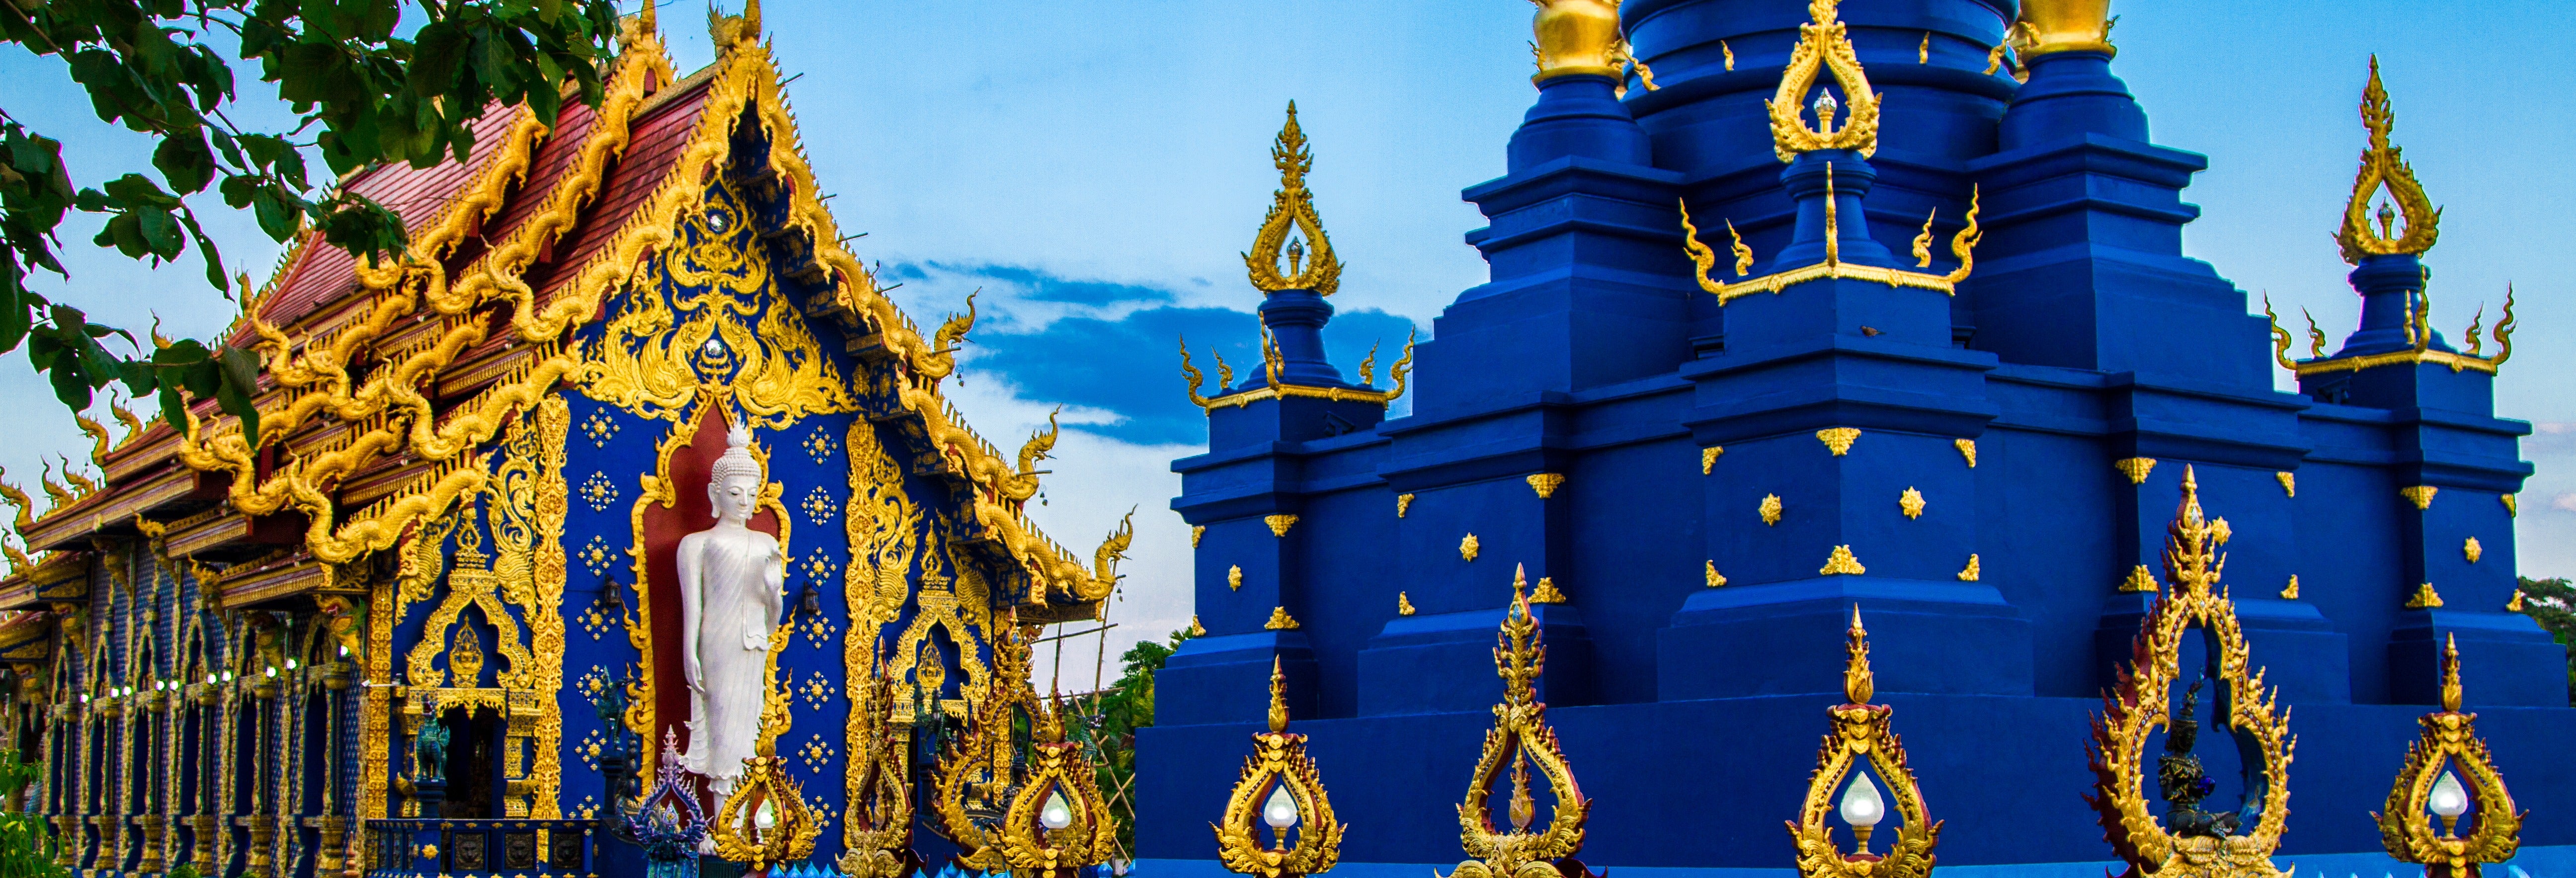 Excursão ao Triângulo de Ouro em Chiang Rai